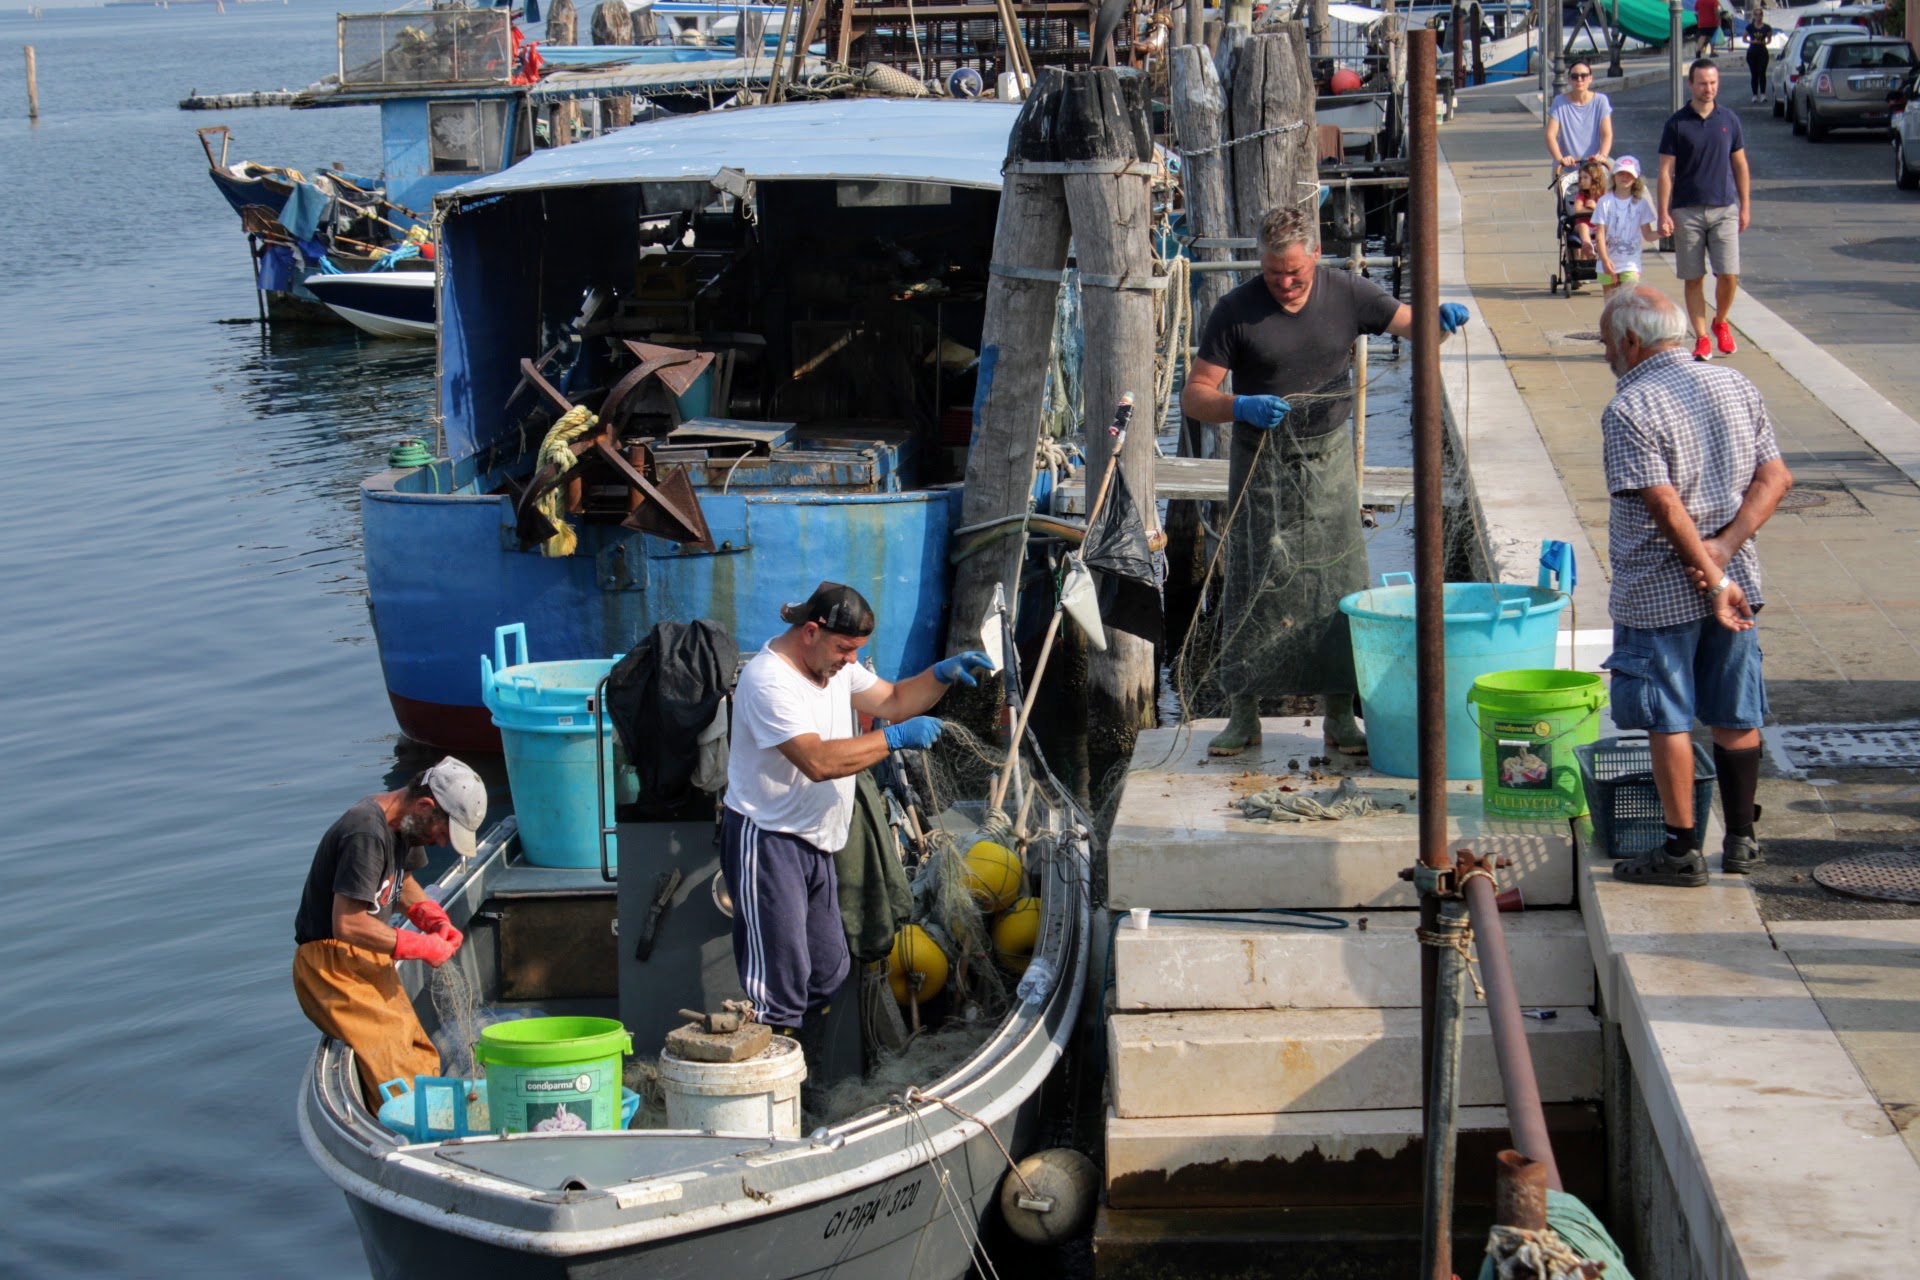 Pescatori che sistemano le reti dopo la pesca...